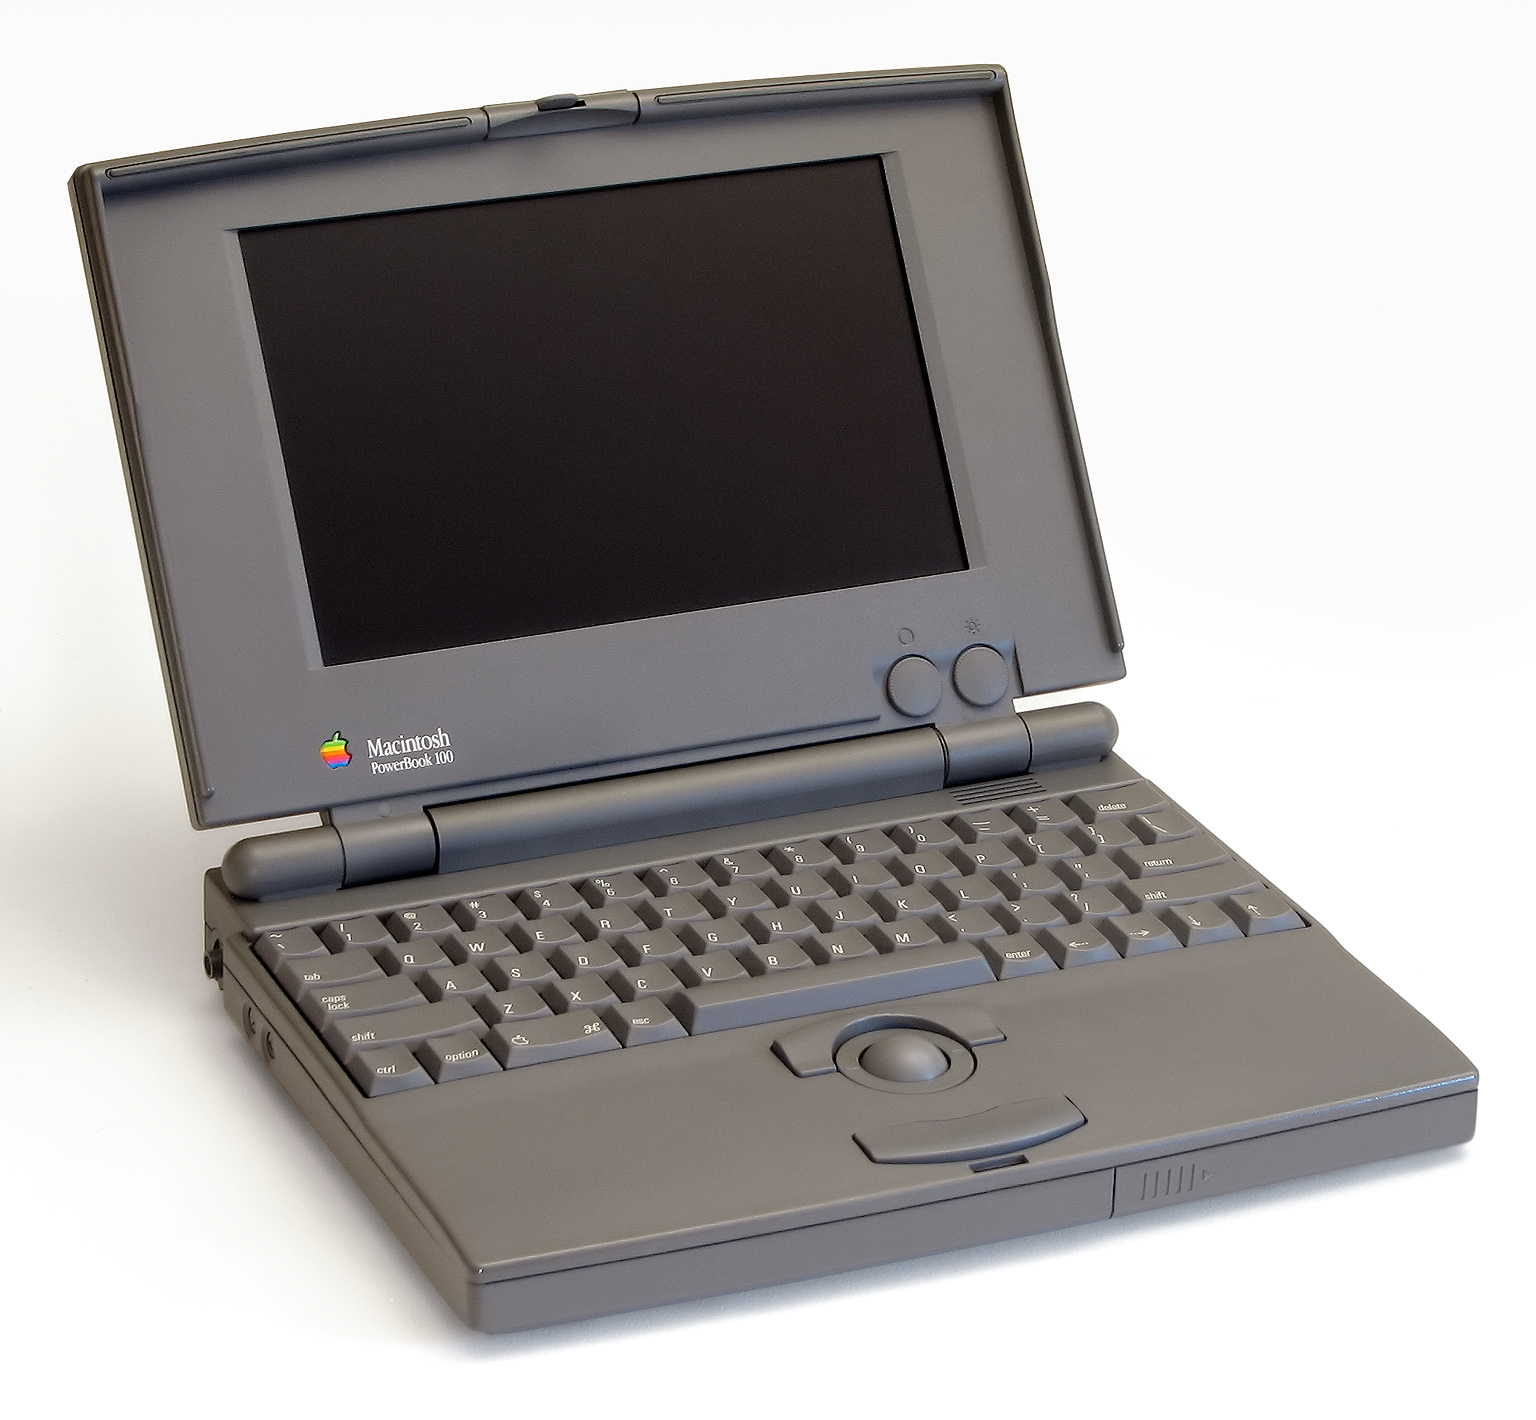 Naučivši mnogo iz pogrešaka svojeg prvog prijenosnog kompjutera, Maca Portablea, Apple je 1991. predstavio njegovog nasljednika, PowerBook 100. PowerBook 100 je za razliku od prethodnika bio iznimno uspješan, pa je kompaniji donio preko milijardu dolara prihoda u samo godinu dana prodaje. PowerBook 100 je također postavio temeljene dizajnerske smjernice za laptope, koji su aktualni još i danas.